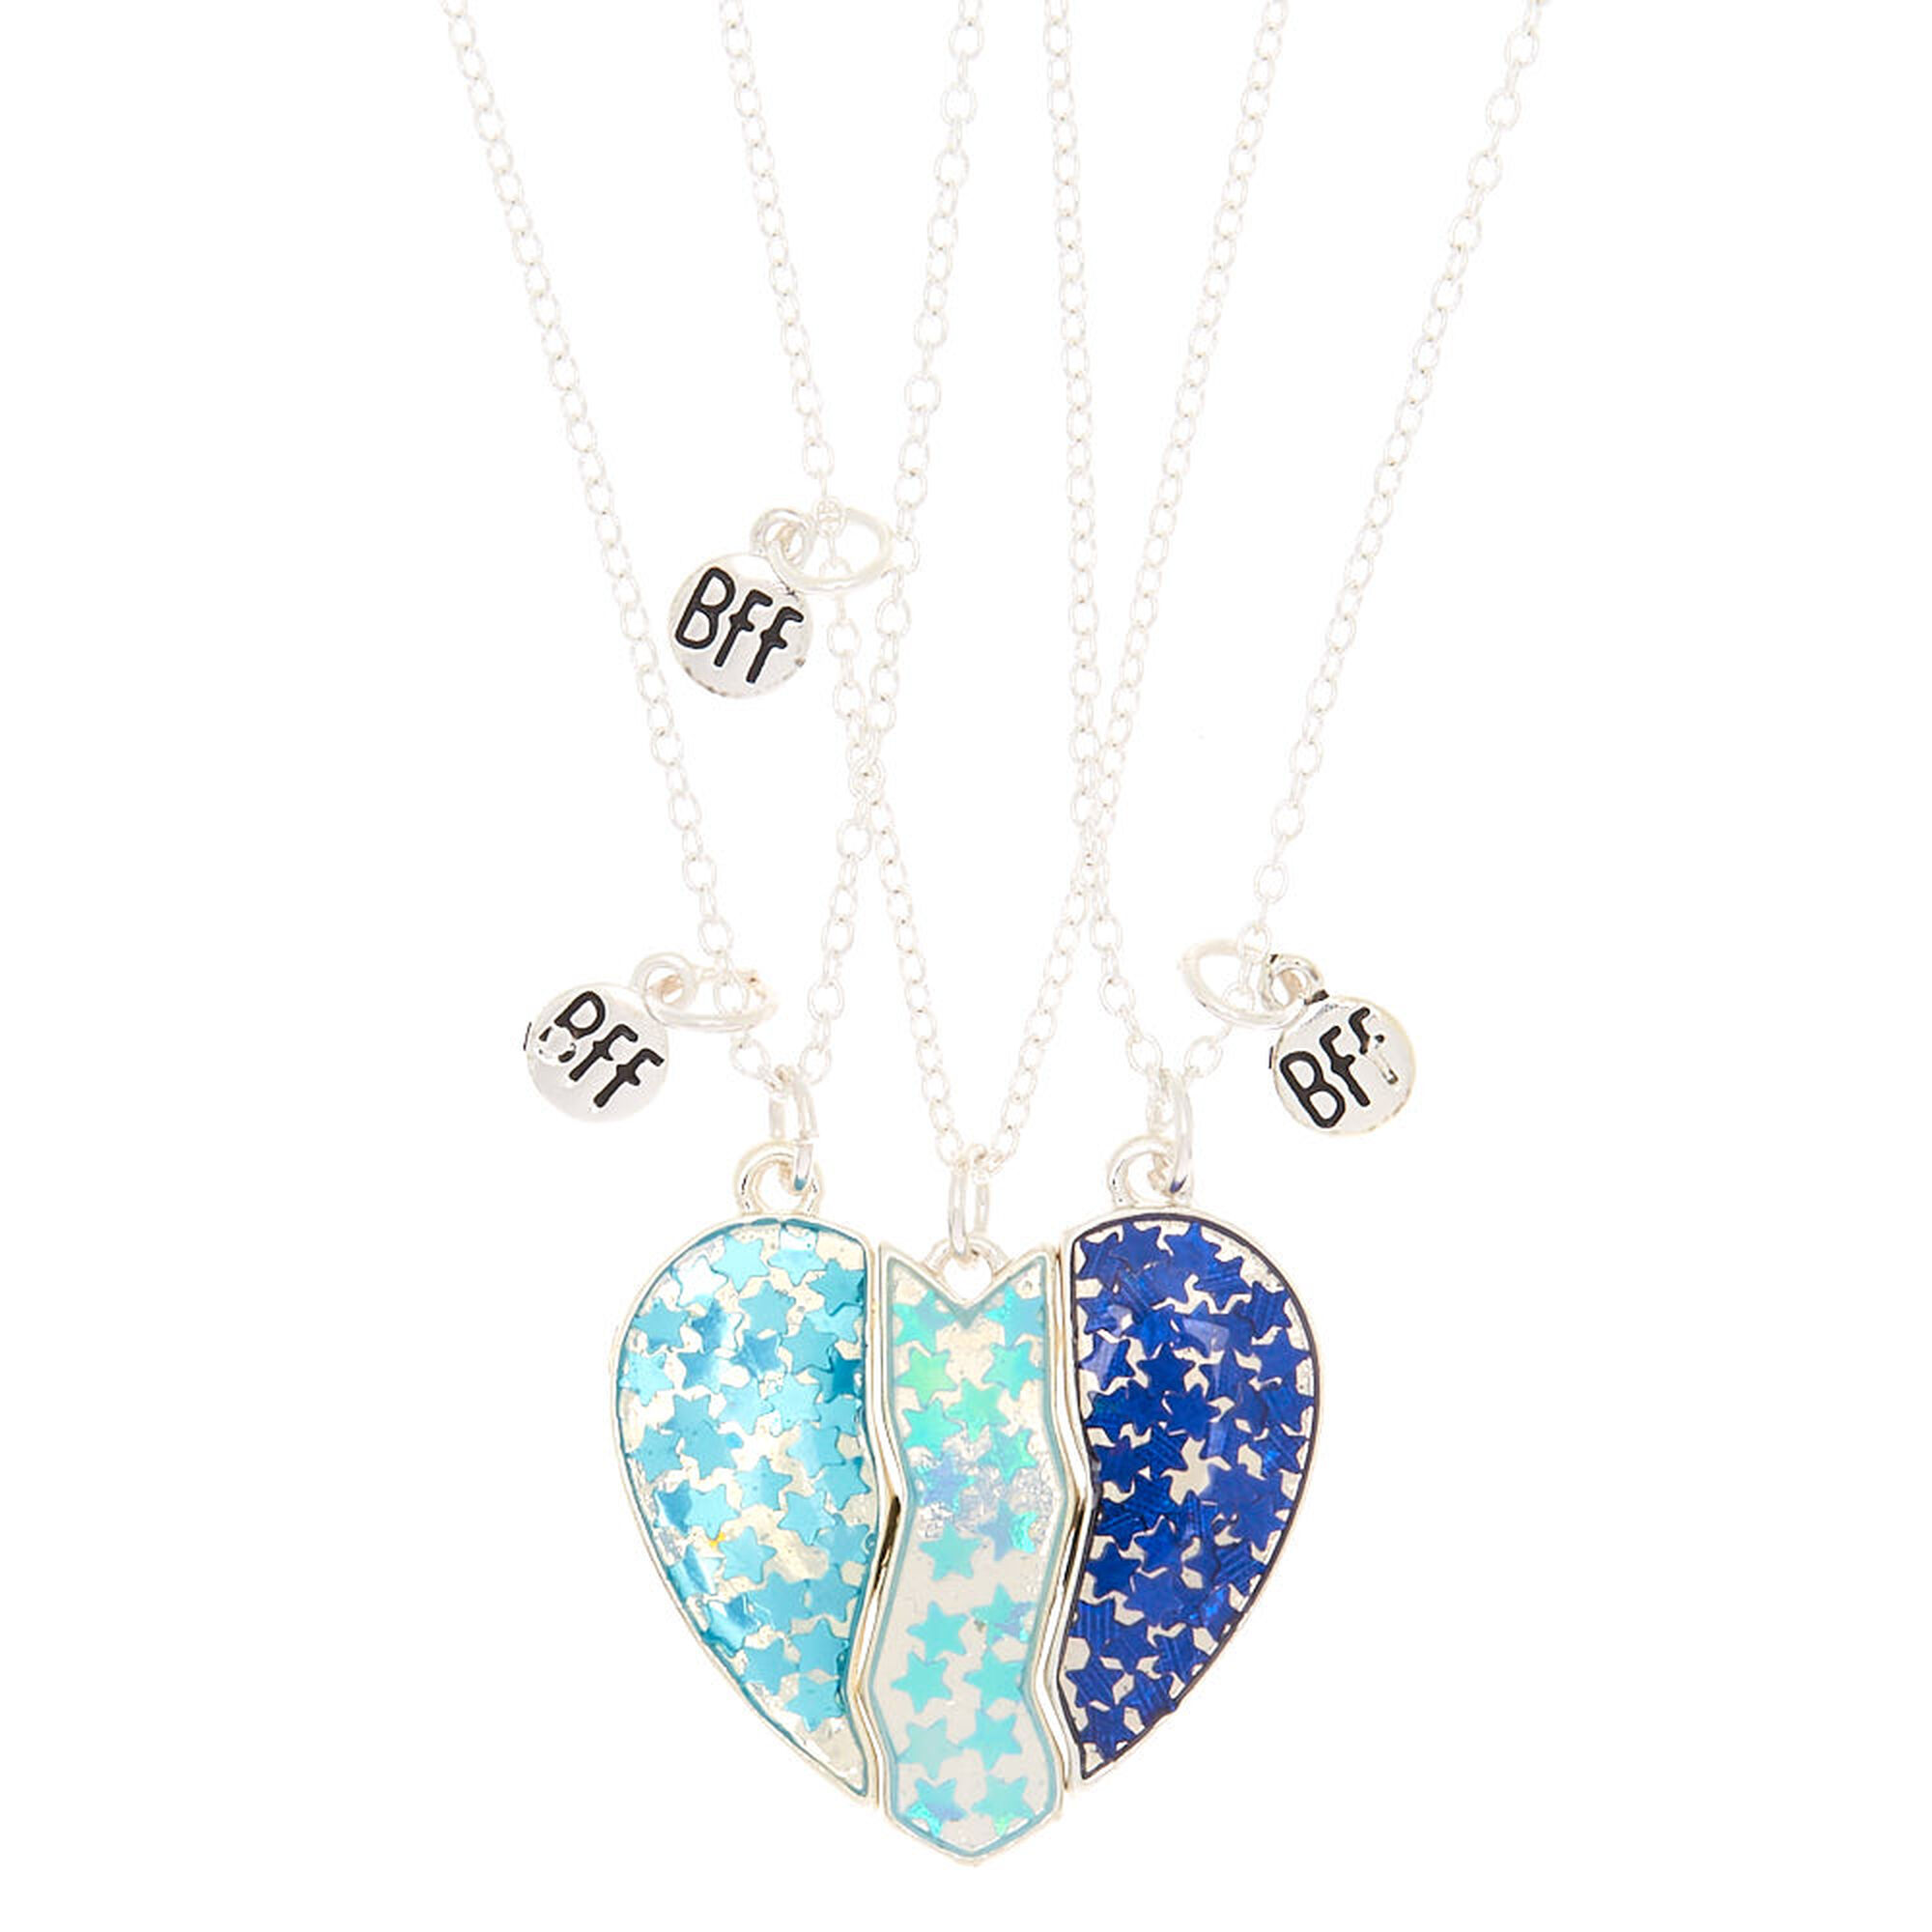 Best Friends Holographic Heart Pendant Necklaces - Blue, 3 Pack ...